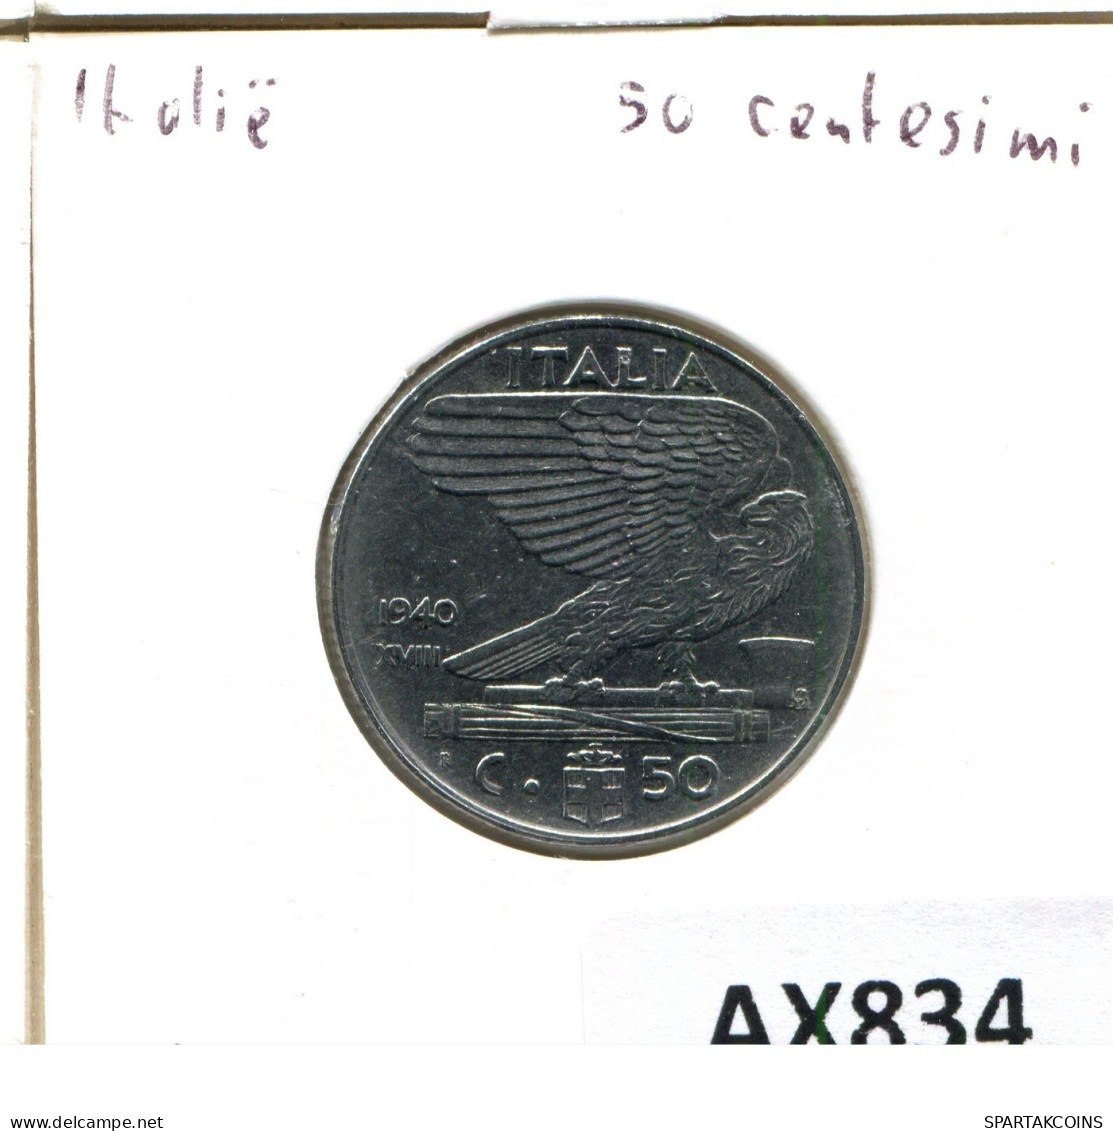 50 CENTESIMI 1940 ITALY Coin #AX834.U.A - 1900-1946 : Victor Emmanuel III & Umberto II